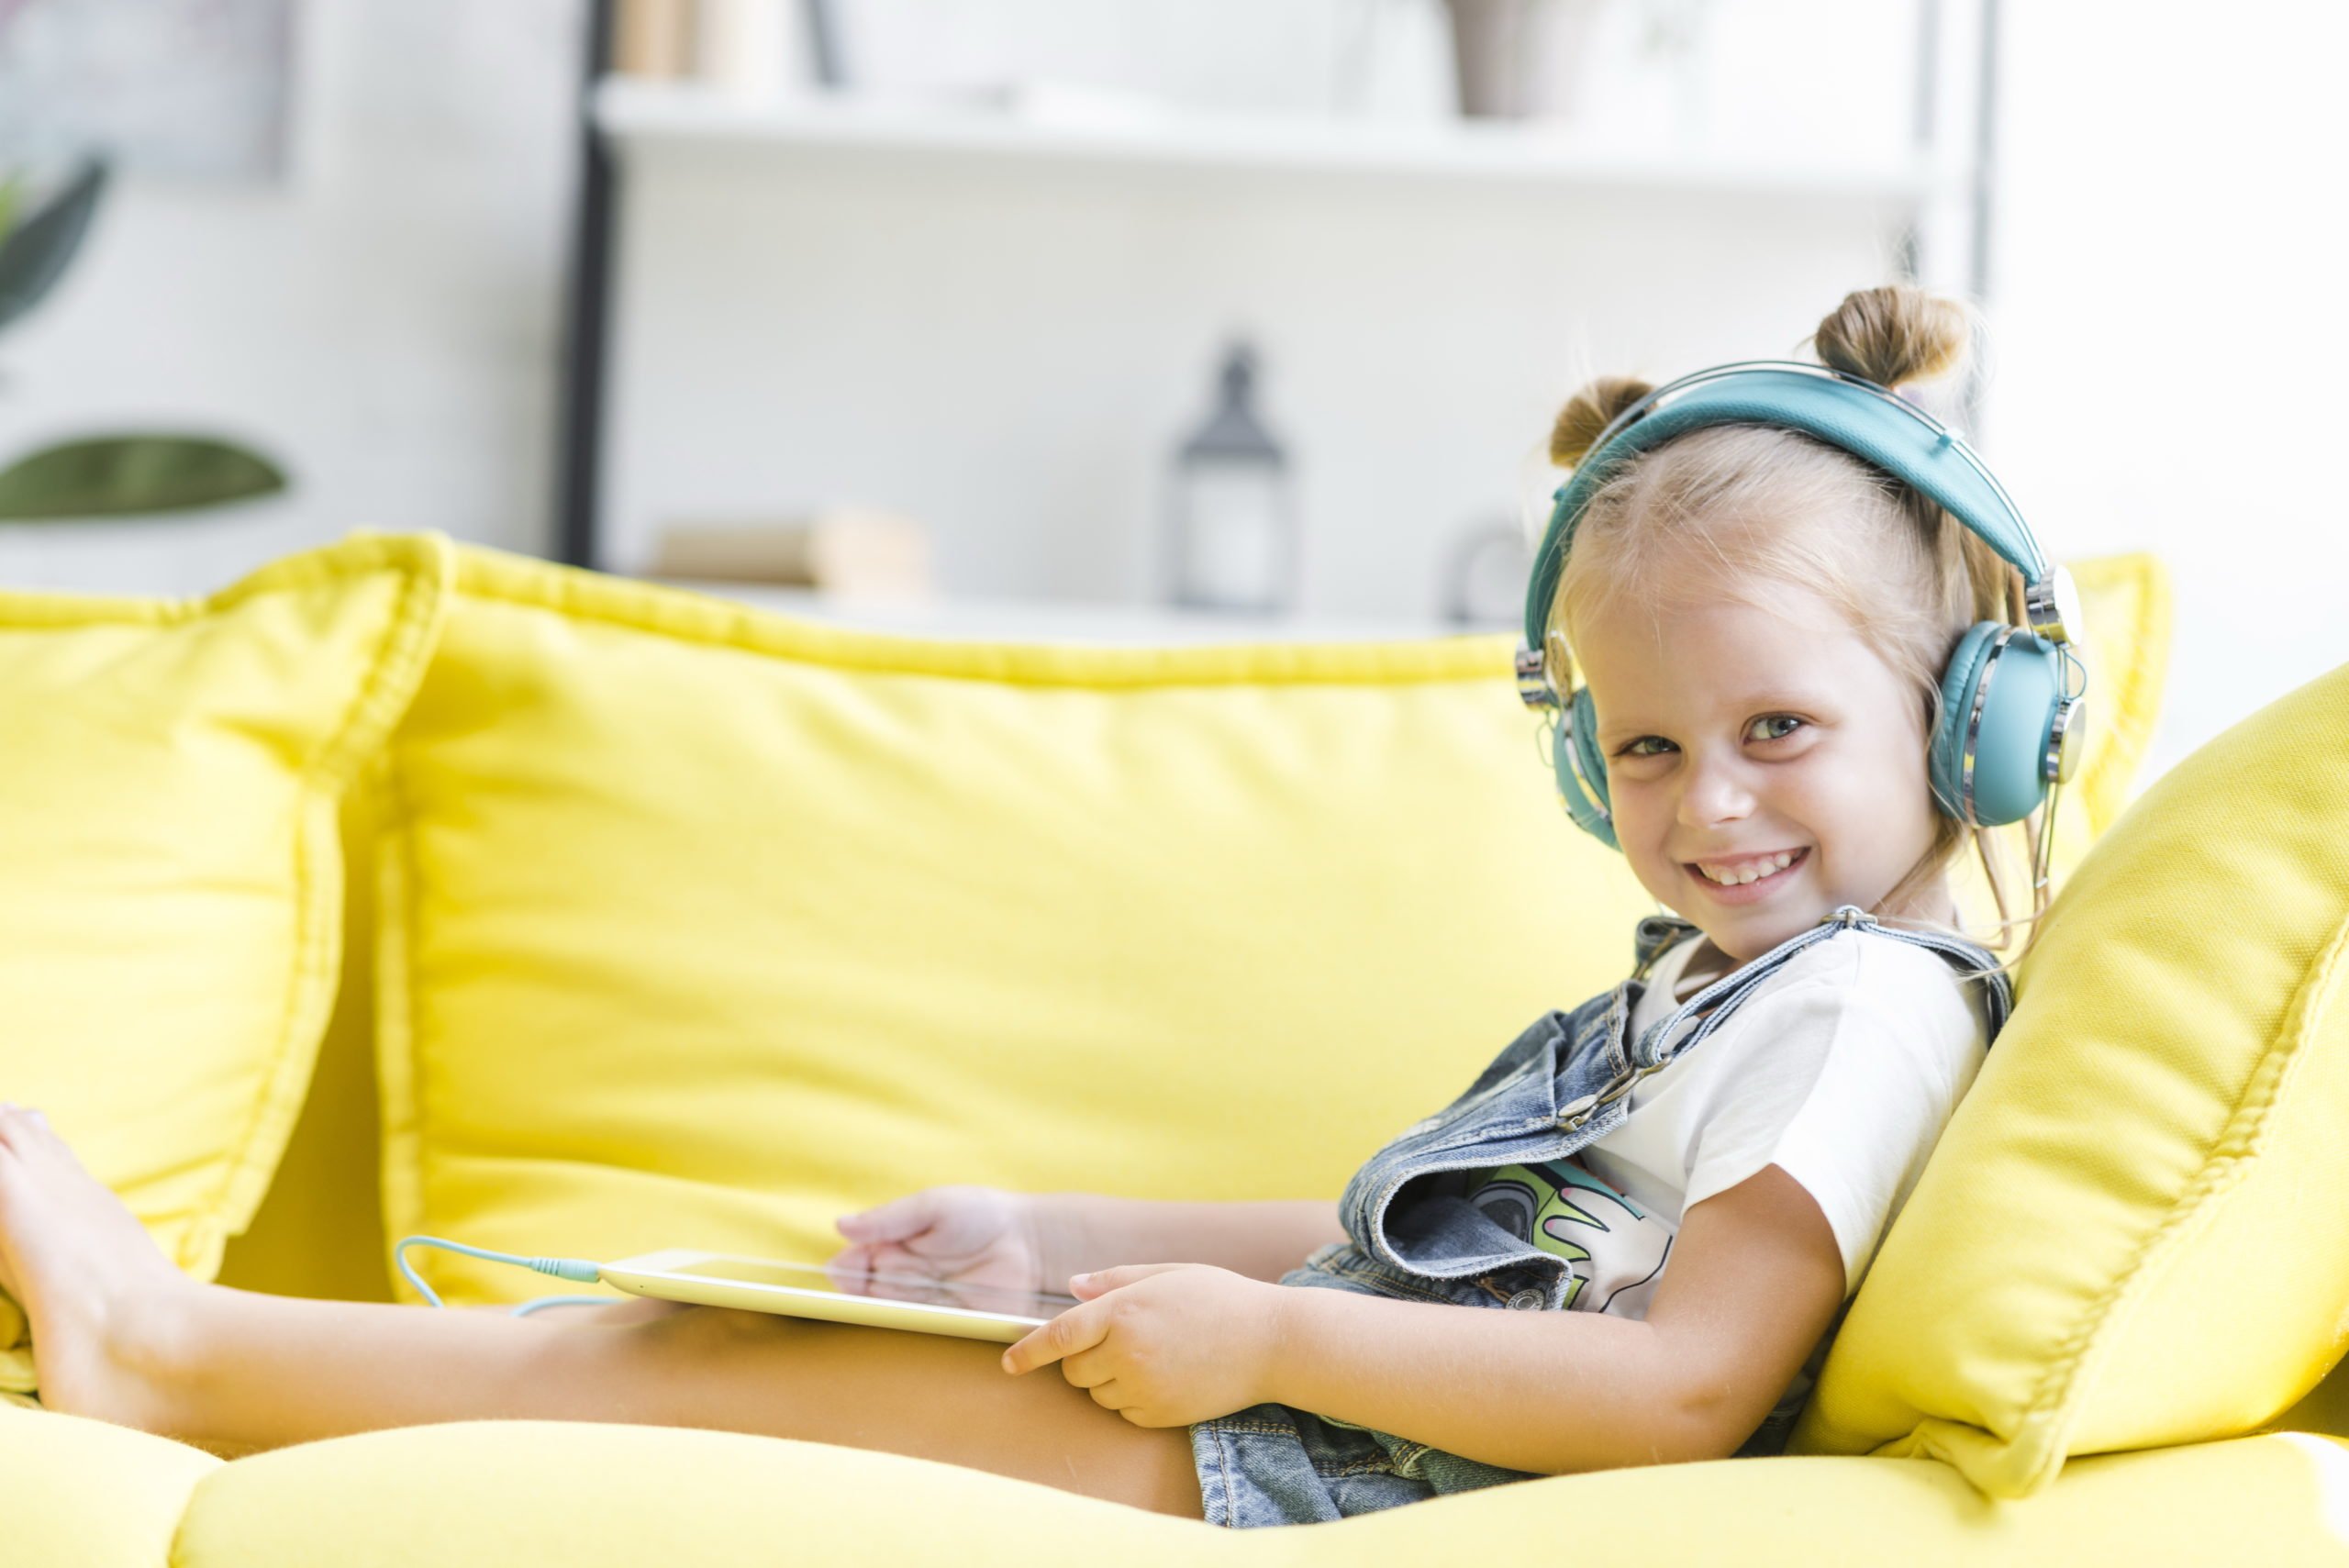 Darmowe audiobooki dla dzieci, bajki do słuchania i oglądania